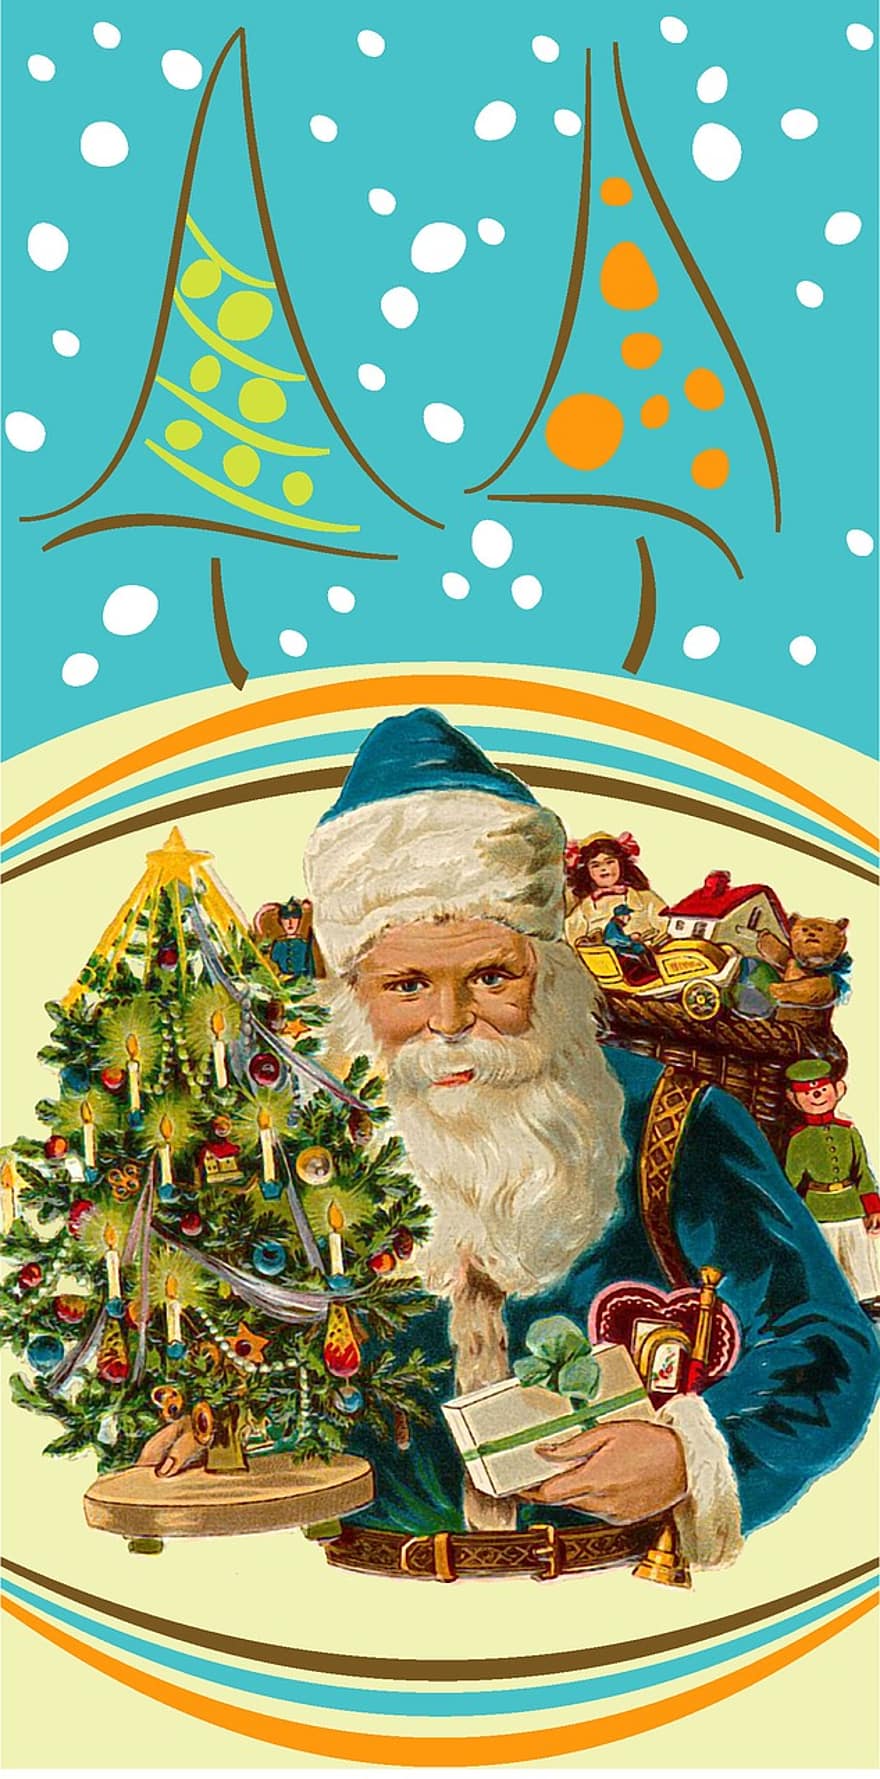 بابا نويل ، عائلة عيد الميلاد ، حفلات ، عيد ميلاد سعيد ، نويل ، عيد الميلاد ، زينة العيد ، ديسمبر ، حاضر ، عتيق ، صنوبر